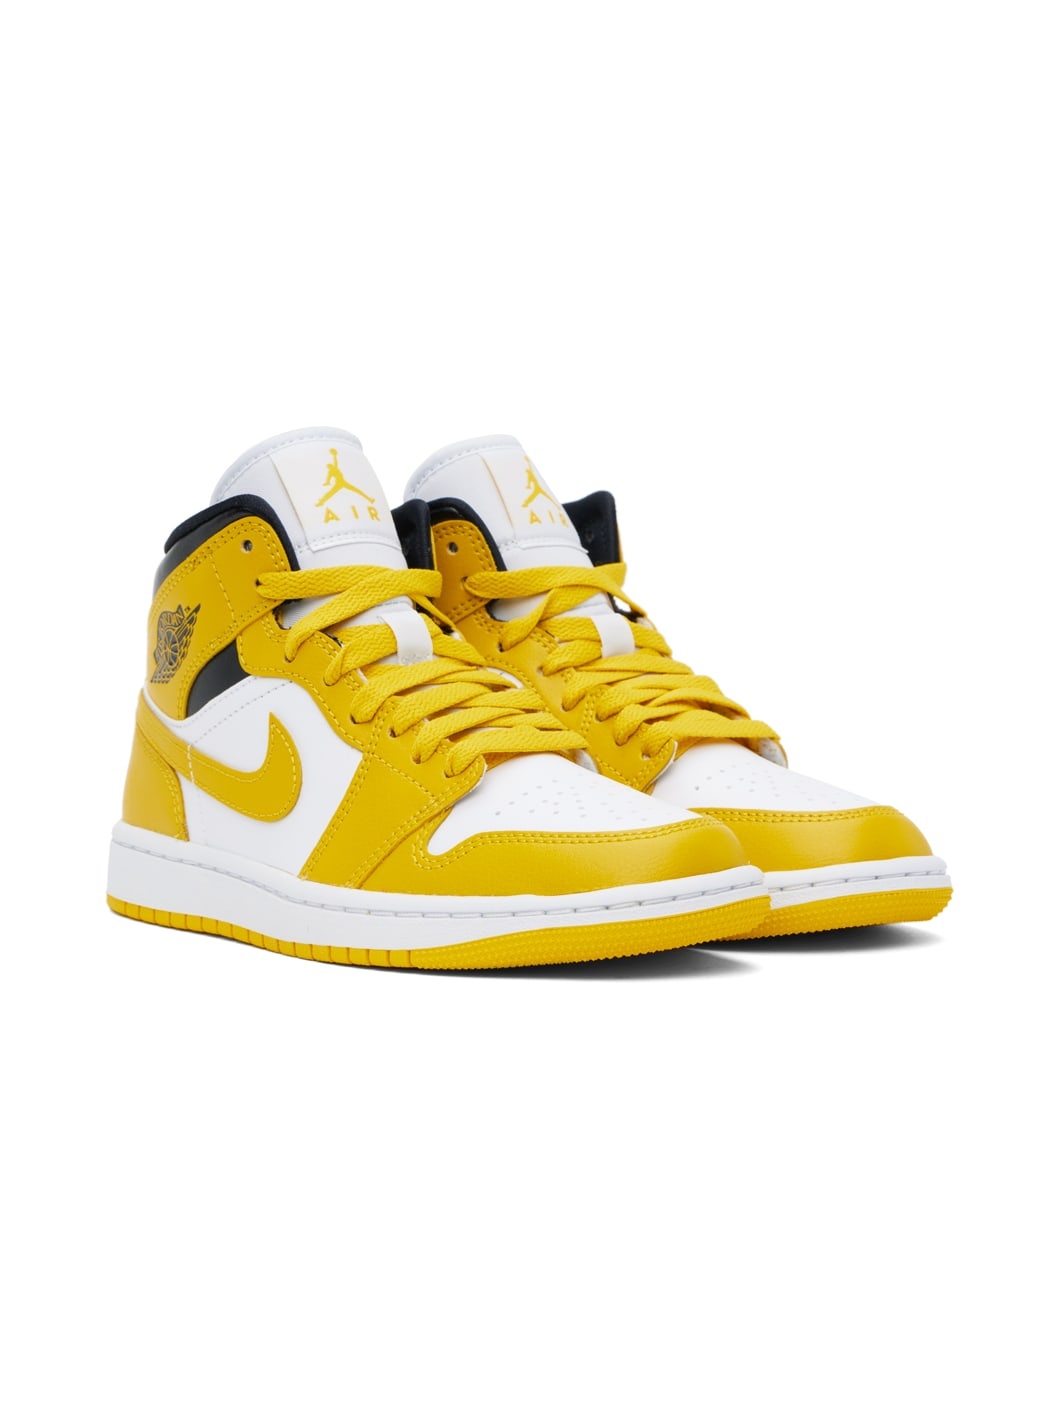 White & Yellow Air Jordan 1 Mid Sneakers - 4